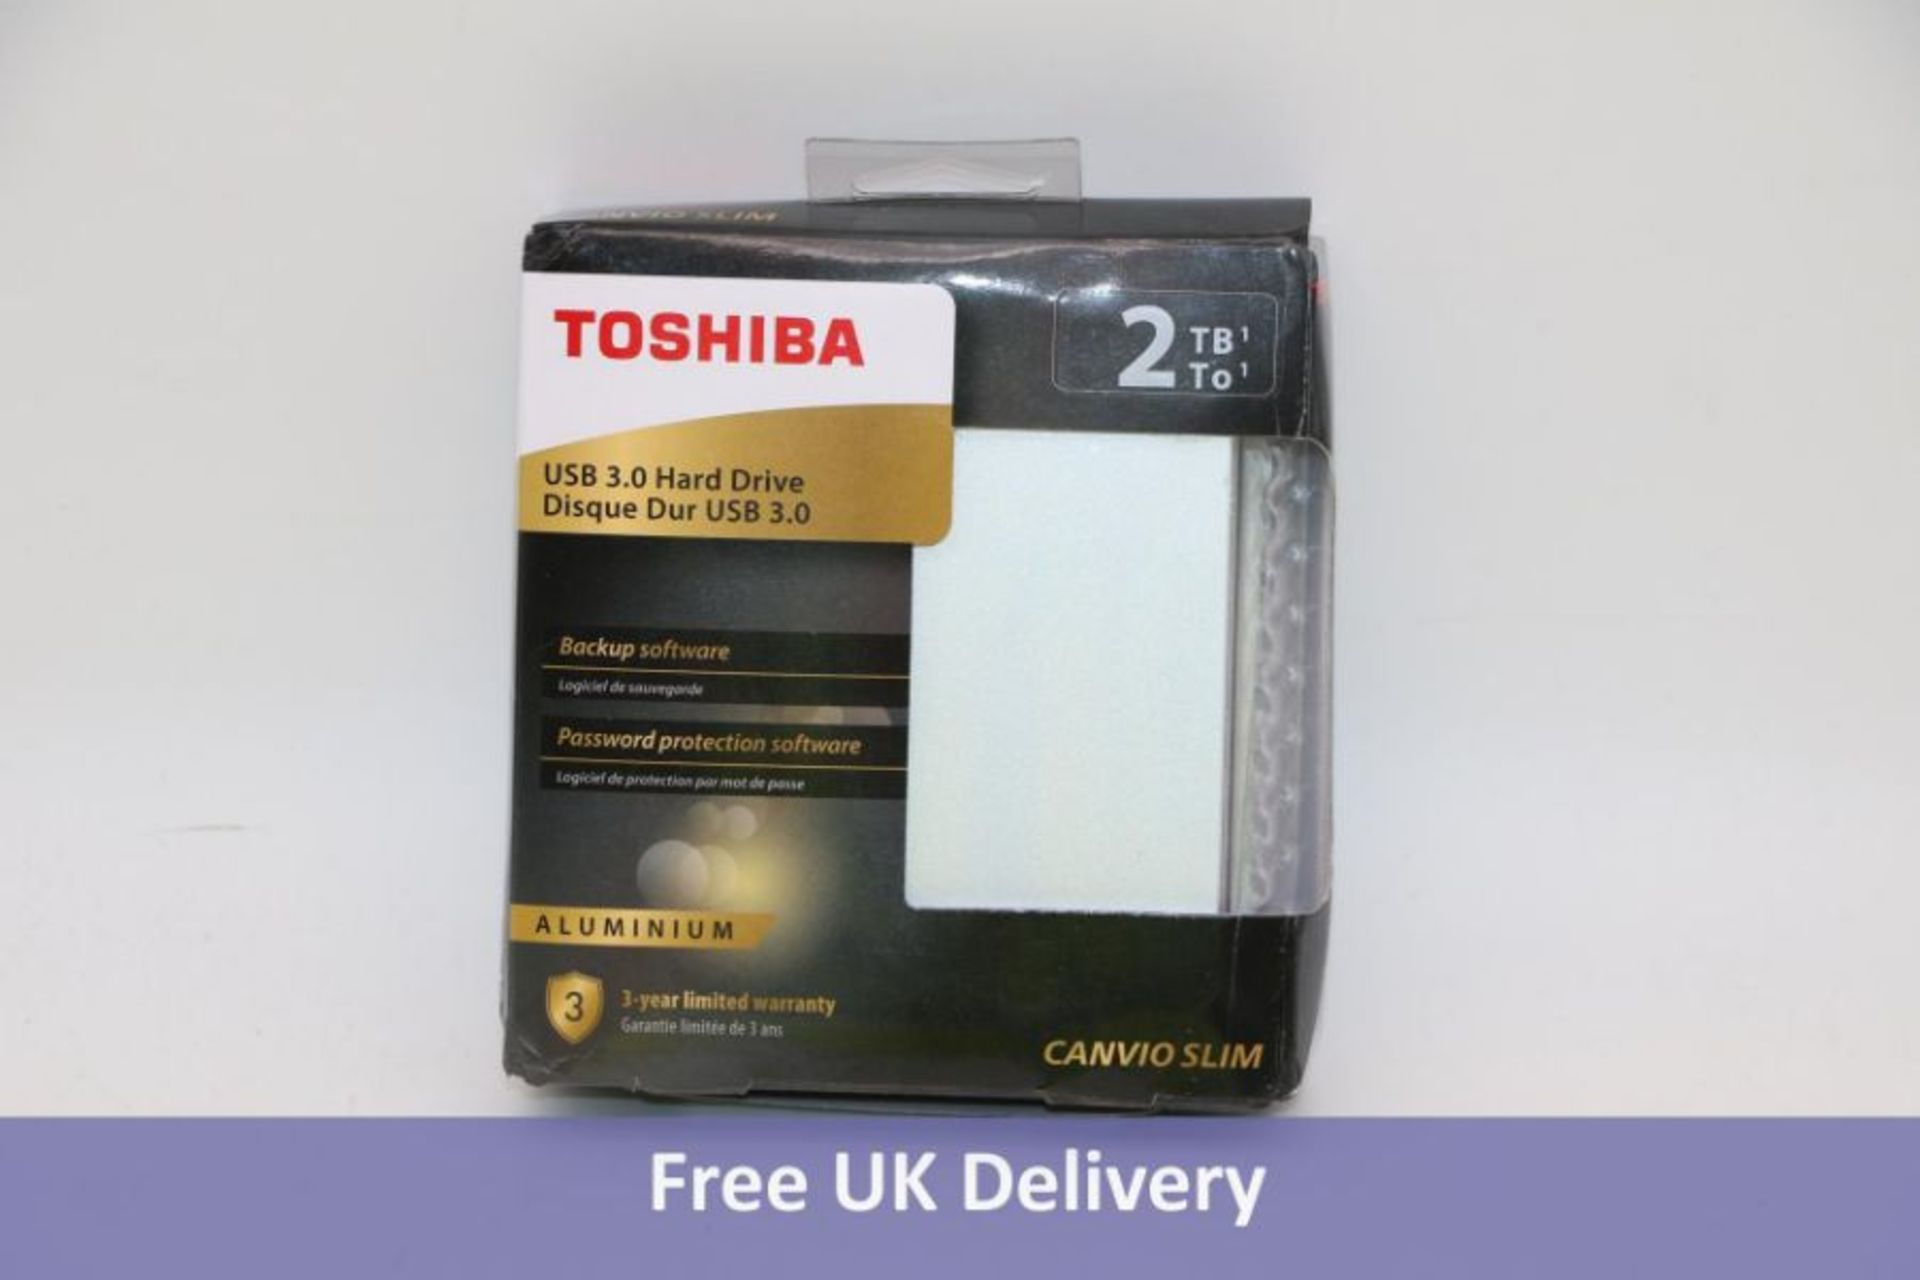 Toshiba USB 3.0 Hard Drive, Canvio Slim